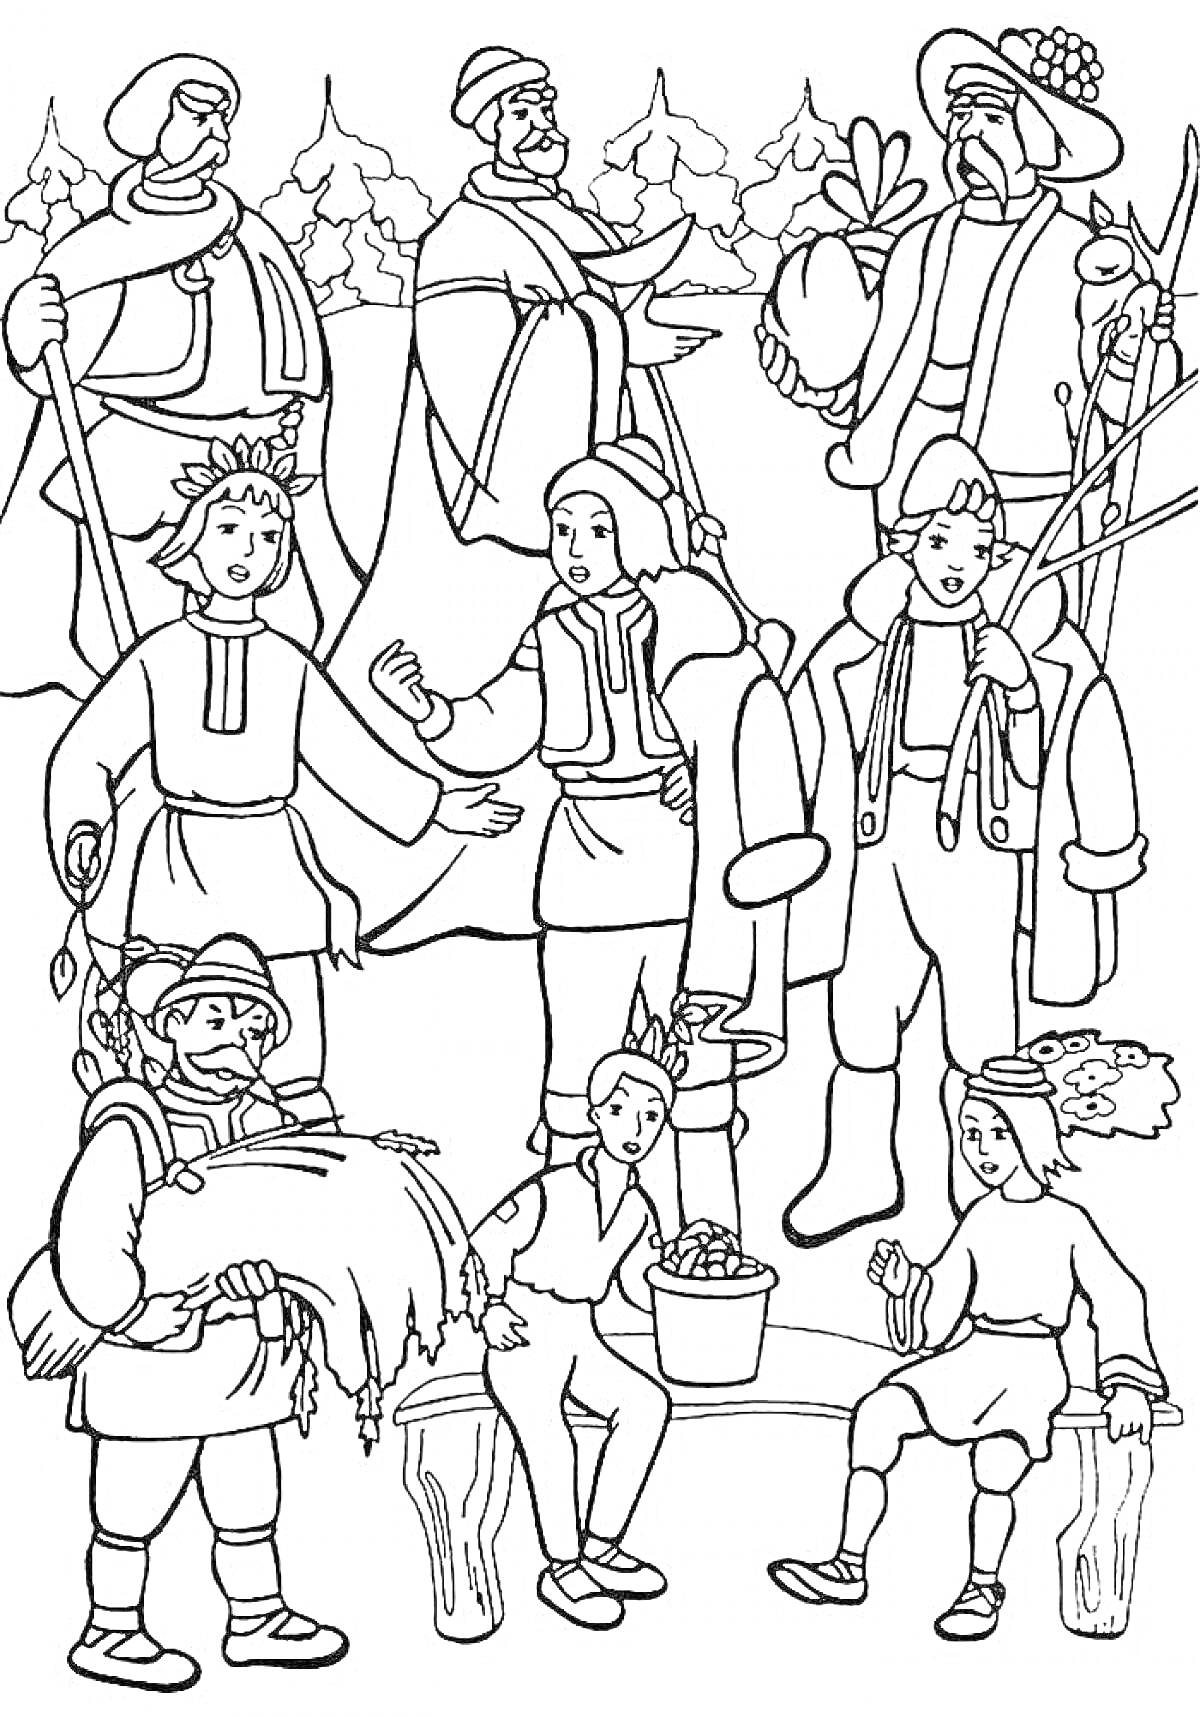 Раскраска Двенадцать месяцев, персонажи, мужчины и женщины в традиционной одежде, деревья на заднем плане, ведра и дрова